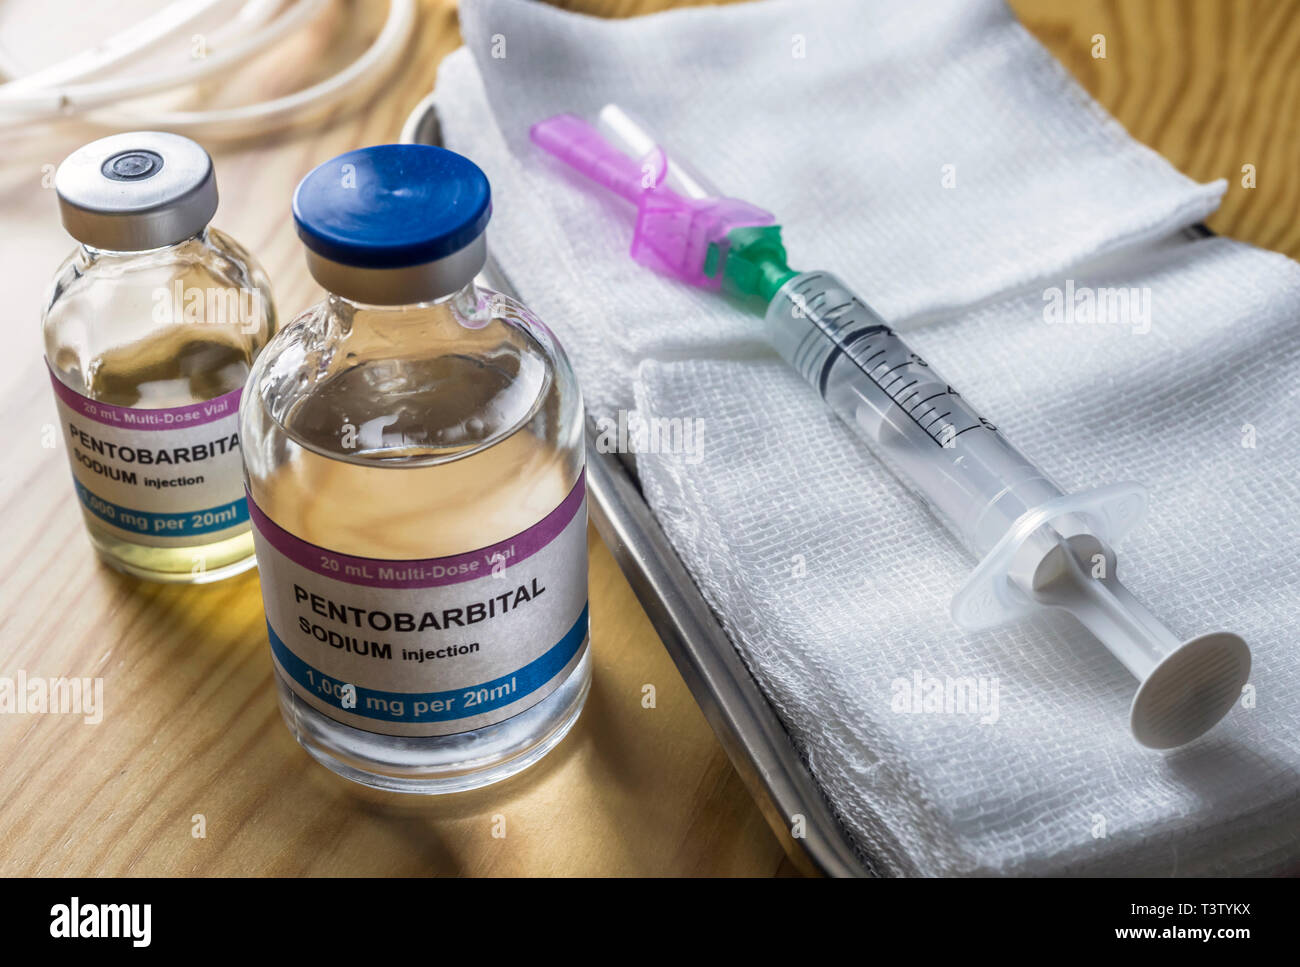 Flaconcino con pentobarbital sodio iniezione usata per eutanasia e inyecion letali in un ospedale, immagine concettuale Foto Stock